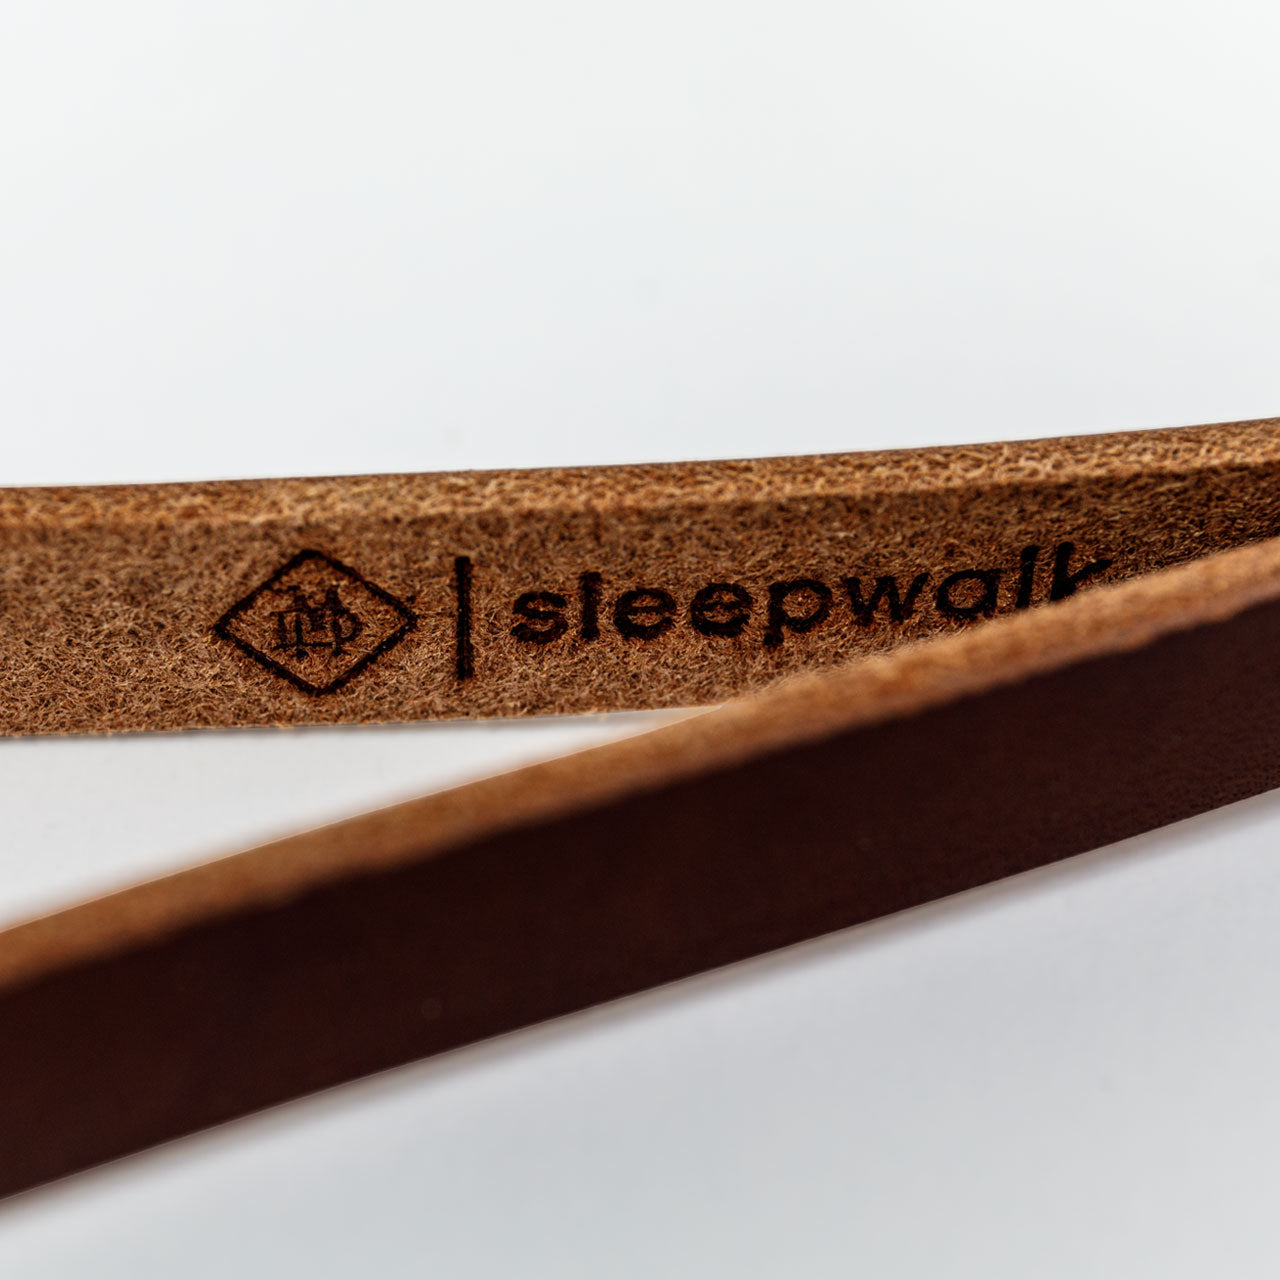 sleepwalk matt day camera wrist strap brown emboss